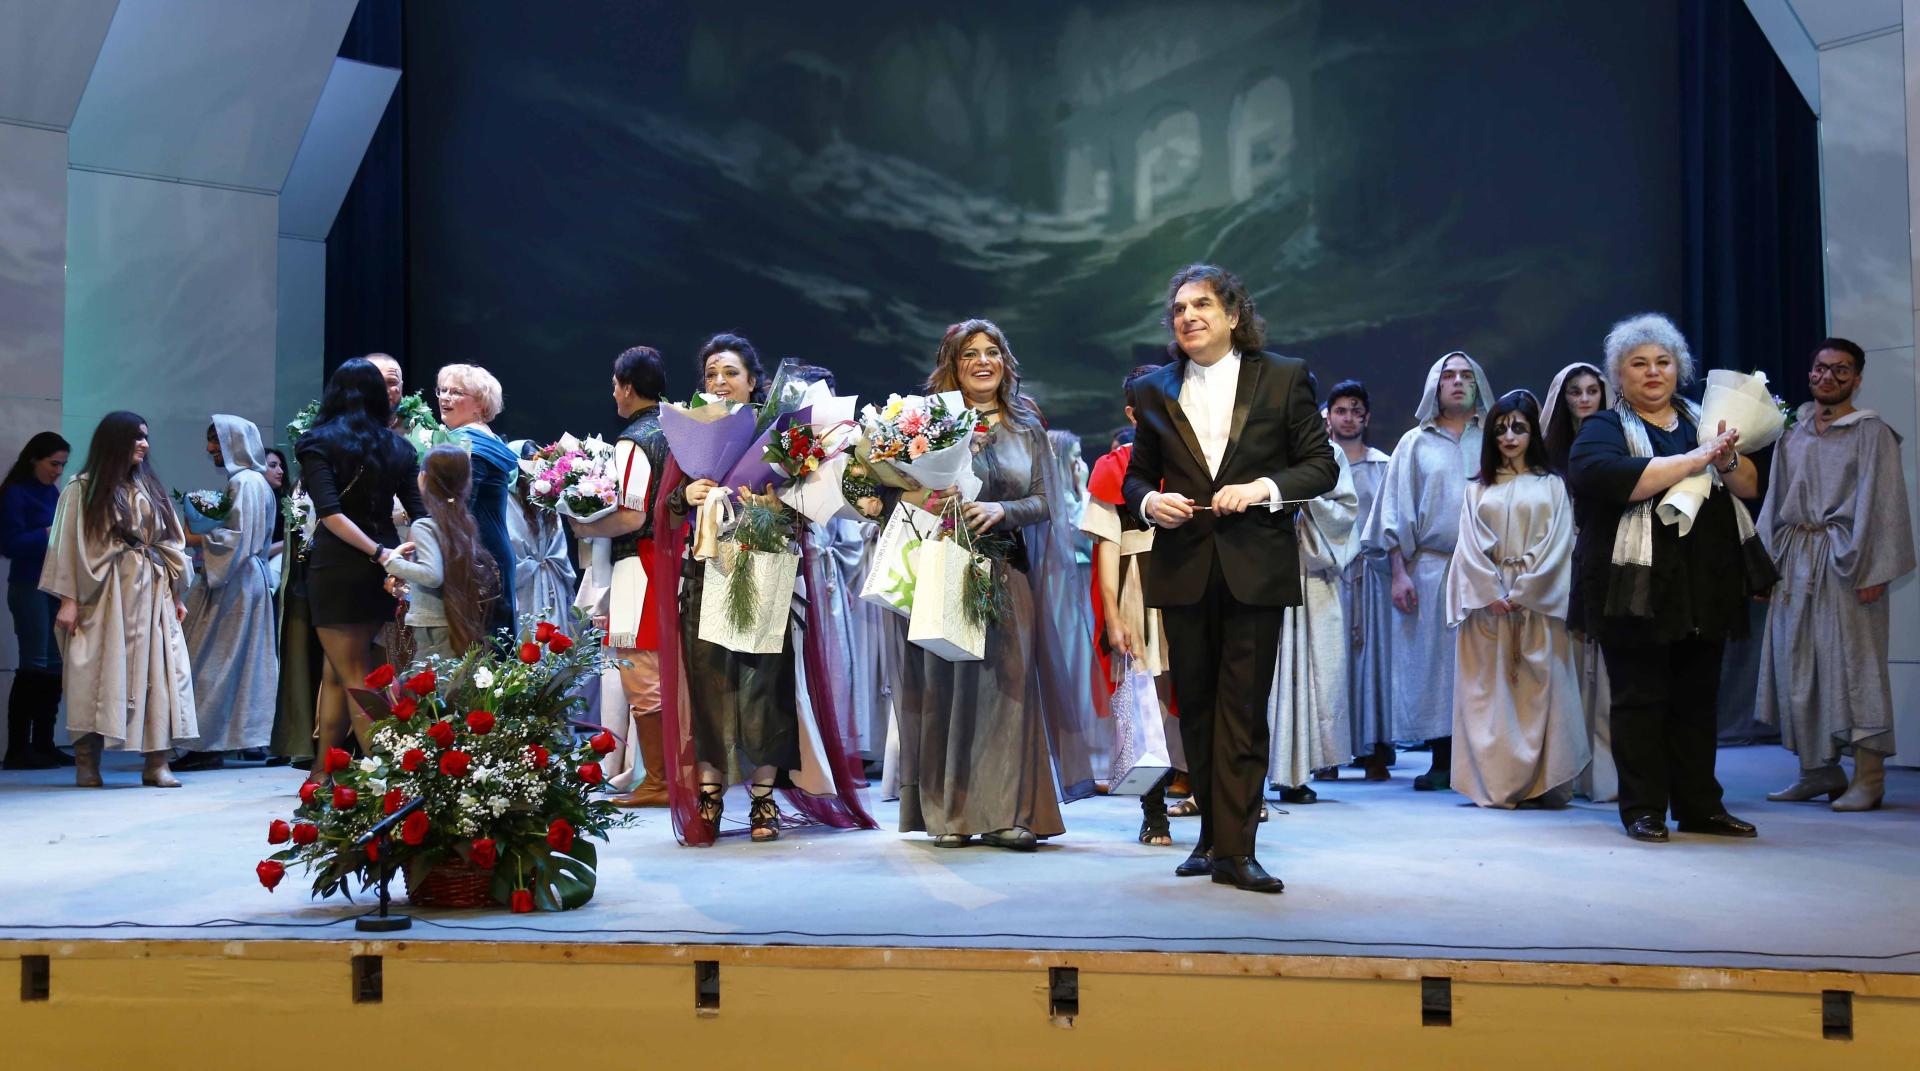 Триумфальная премьера азербайджанских звезд итальянской оперы "Норма" (ФОТО)